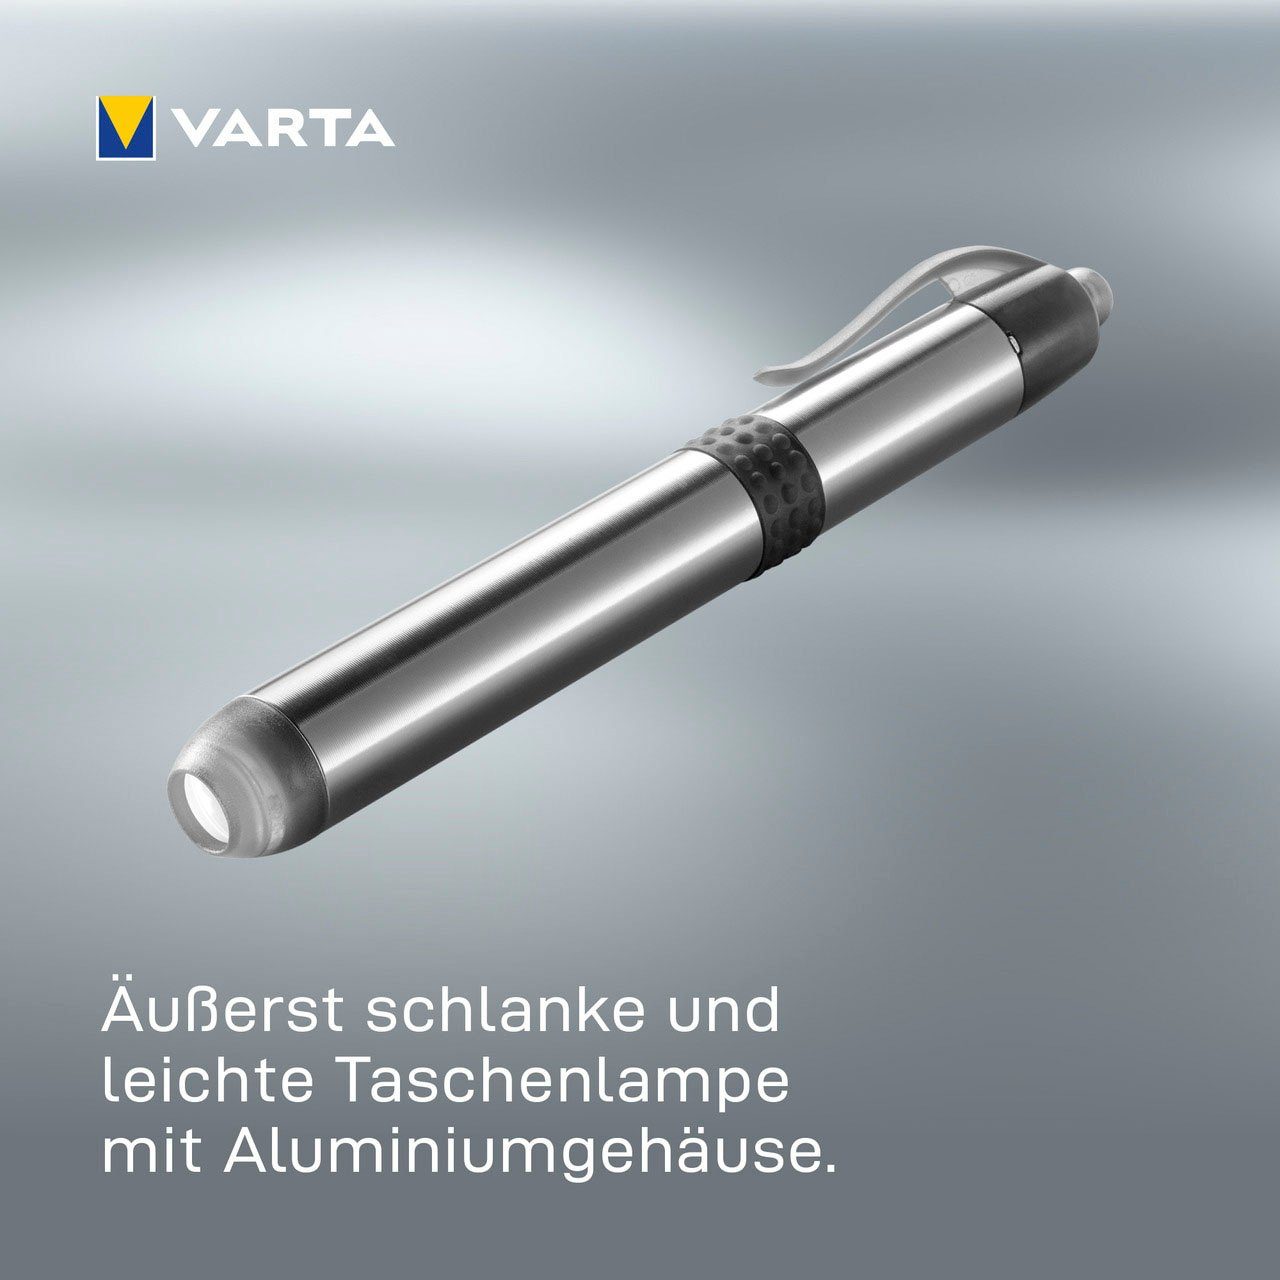 Light Batt. Taschenlampe 1AAA with VARTA Pen